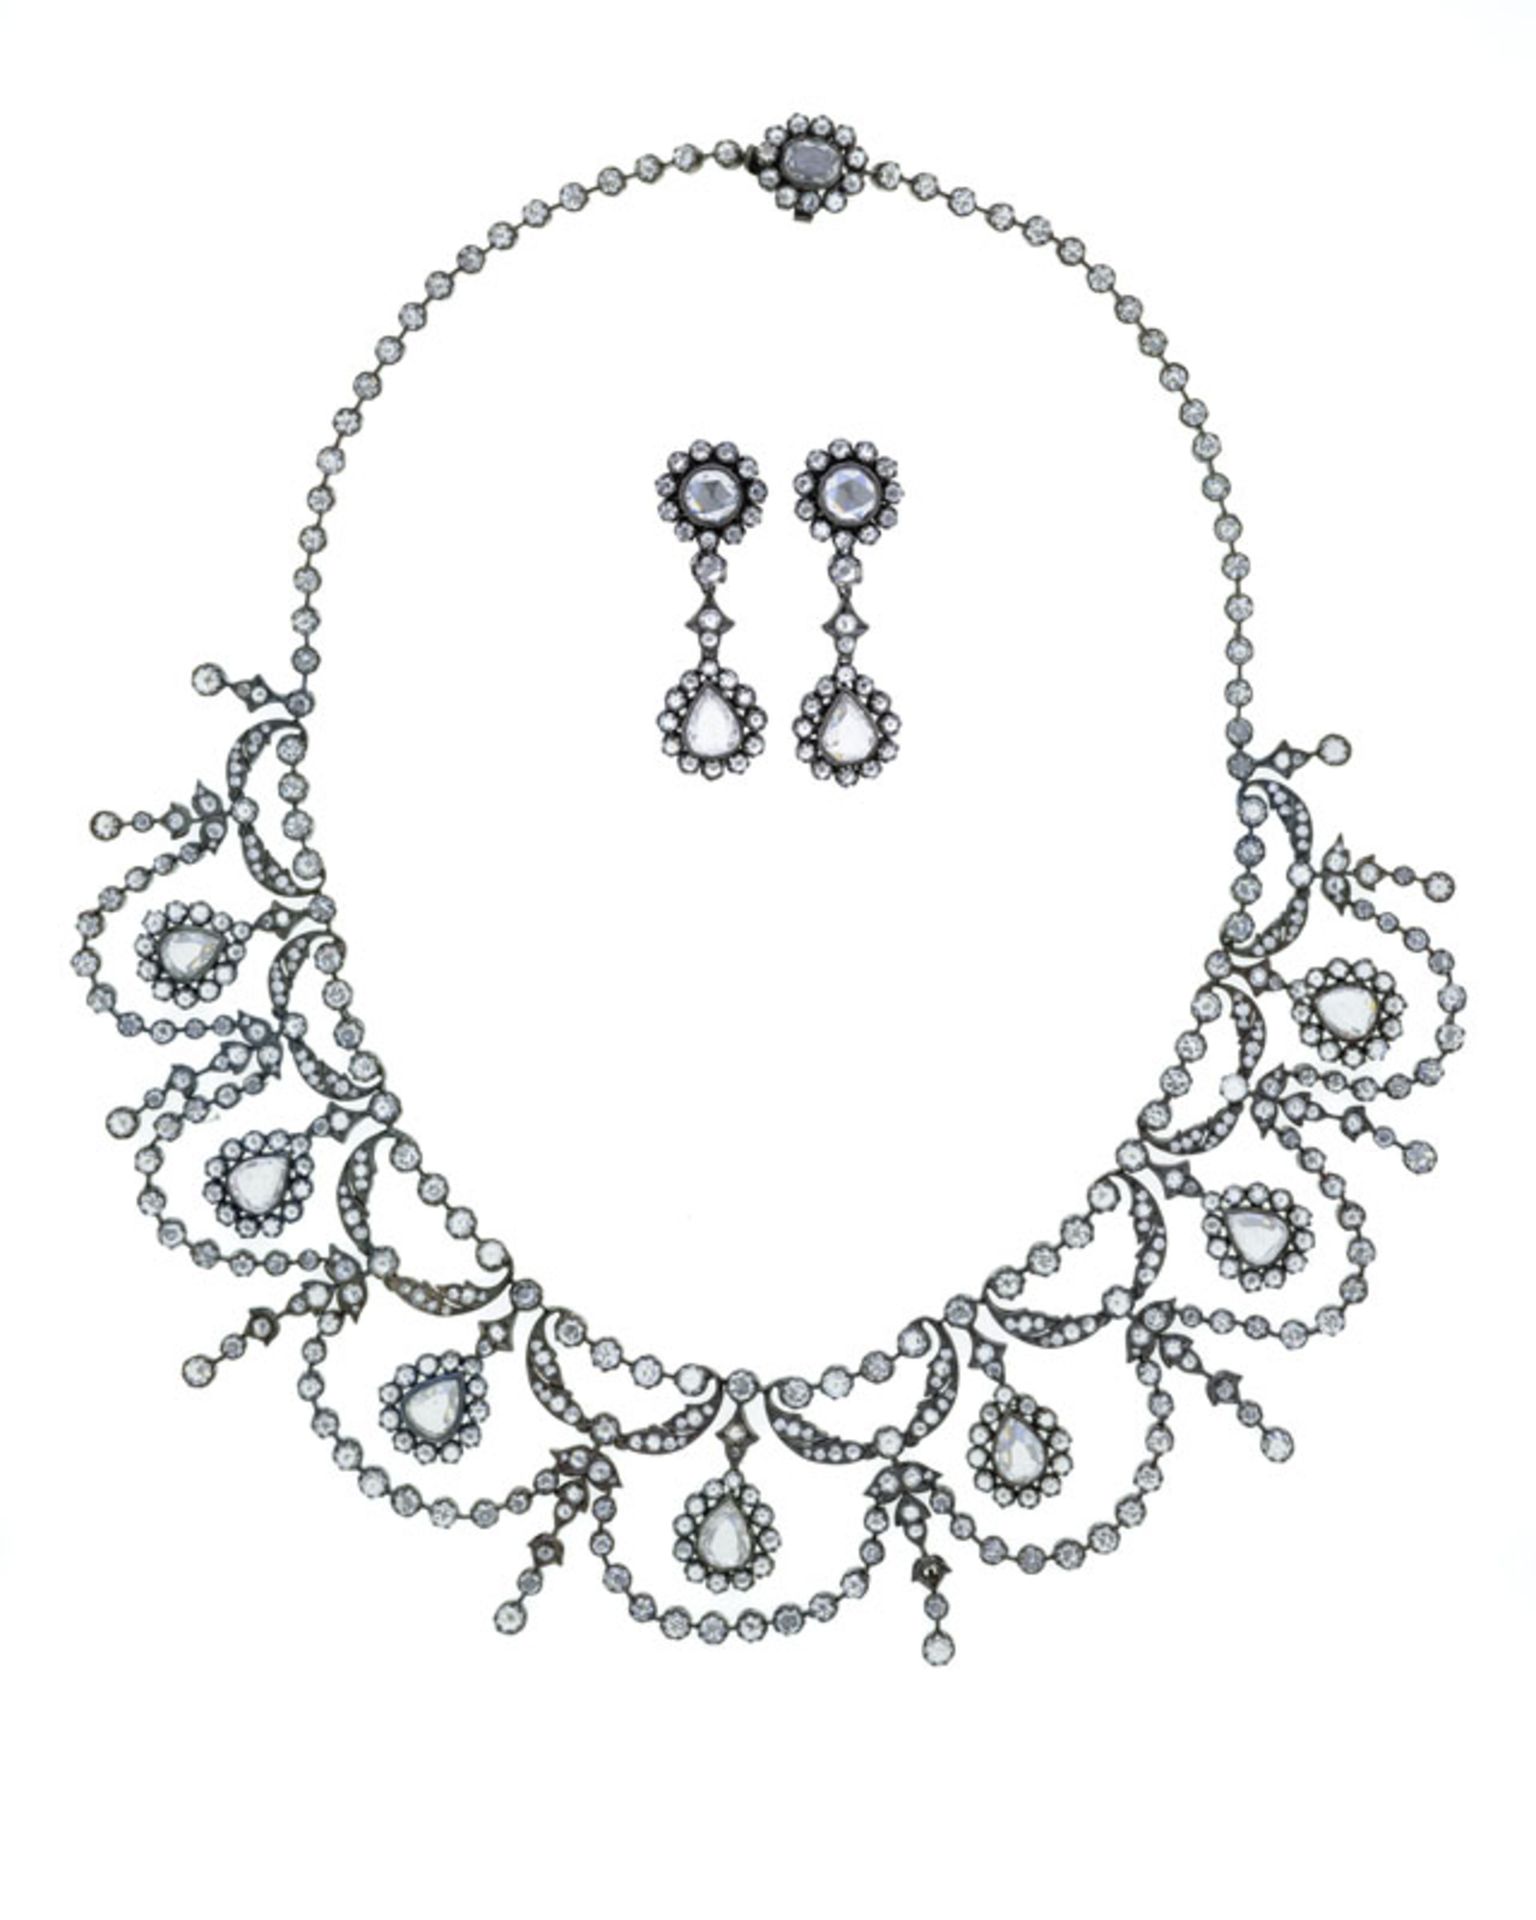 Un collier draperie et une paire de pendants d'oreilles de style XIXe s., or gris 750 noirci sertis